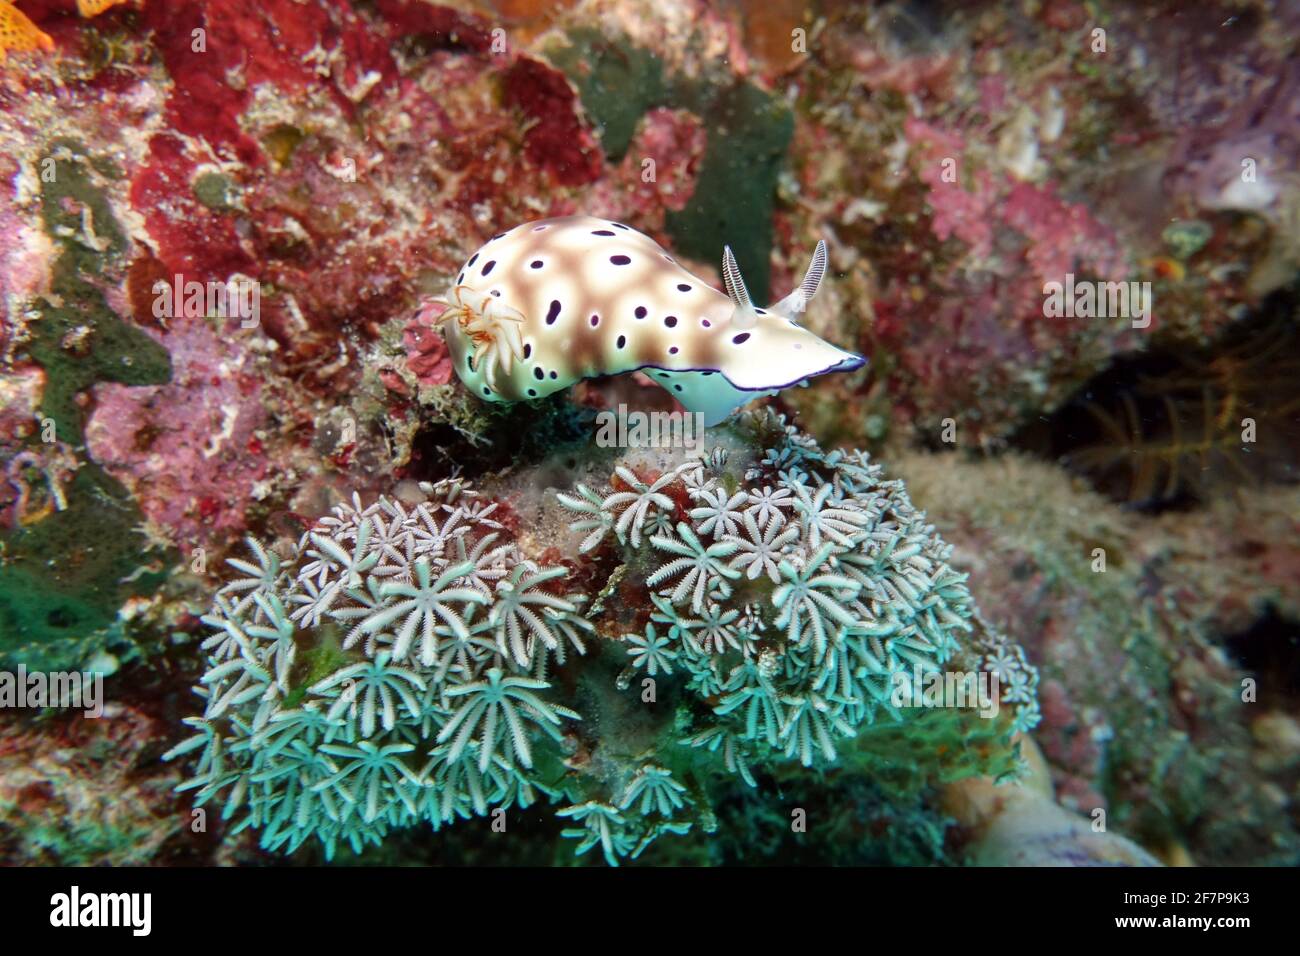 Lug de mar (Hypselodoris tryoni), en un arrecife de coral, Indonesia, Nord-Molukken Foto de stock